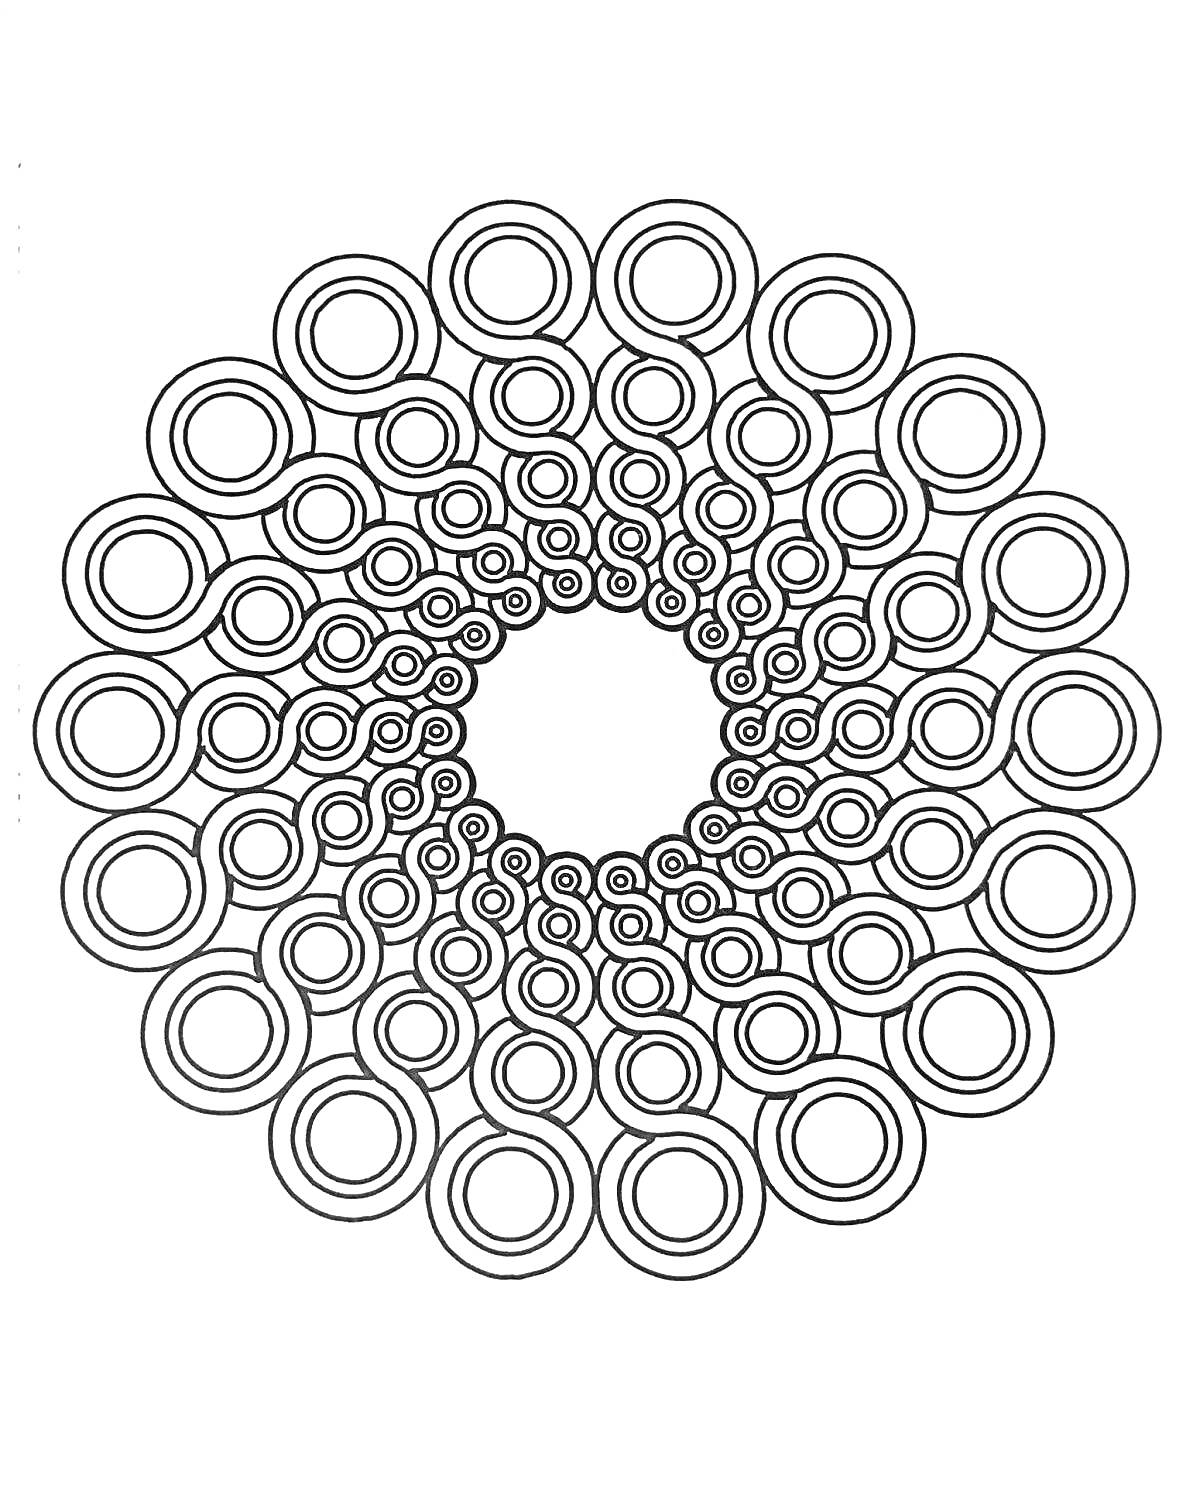 Раскраска Круговая спираль с кругами разного размера